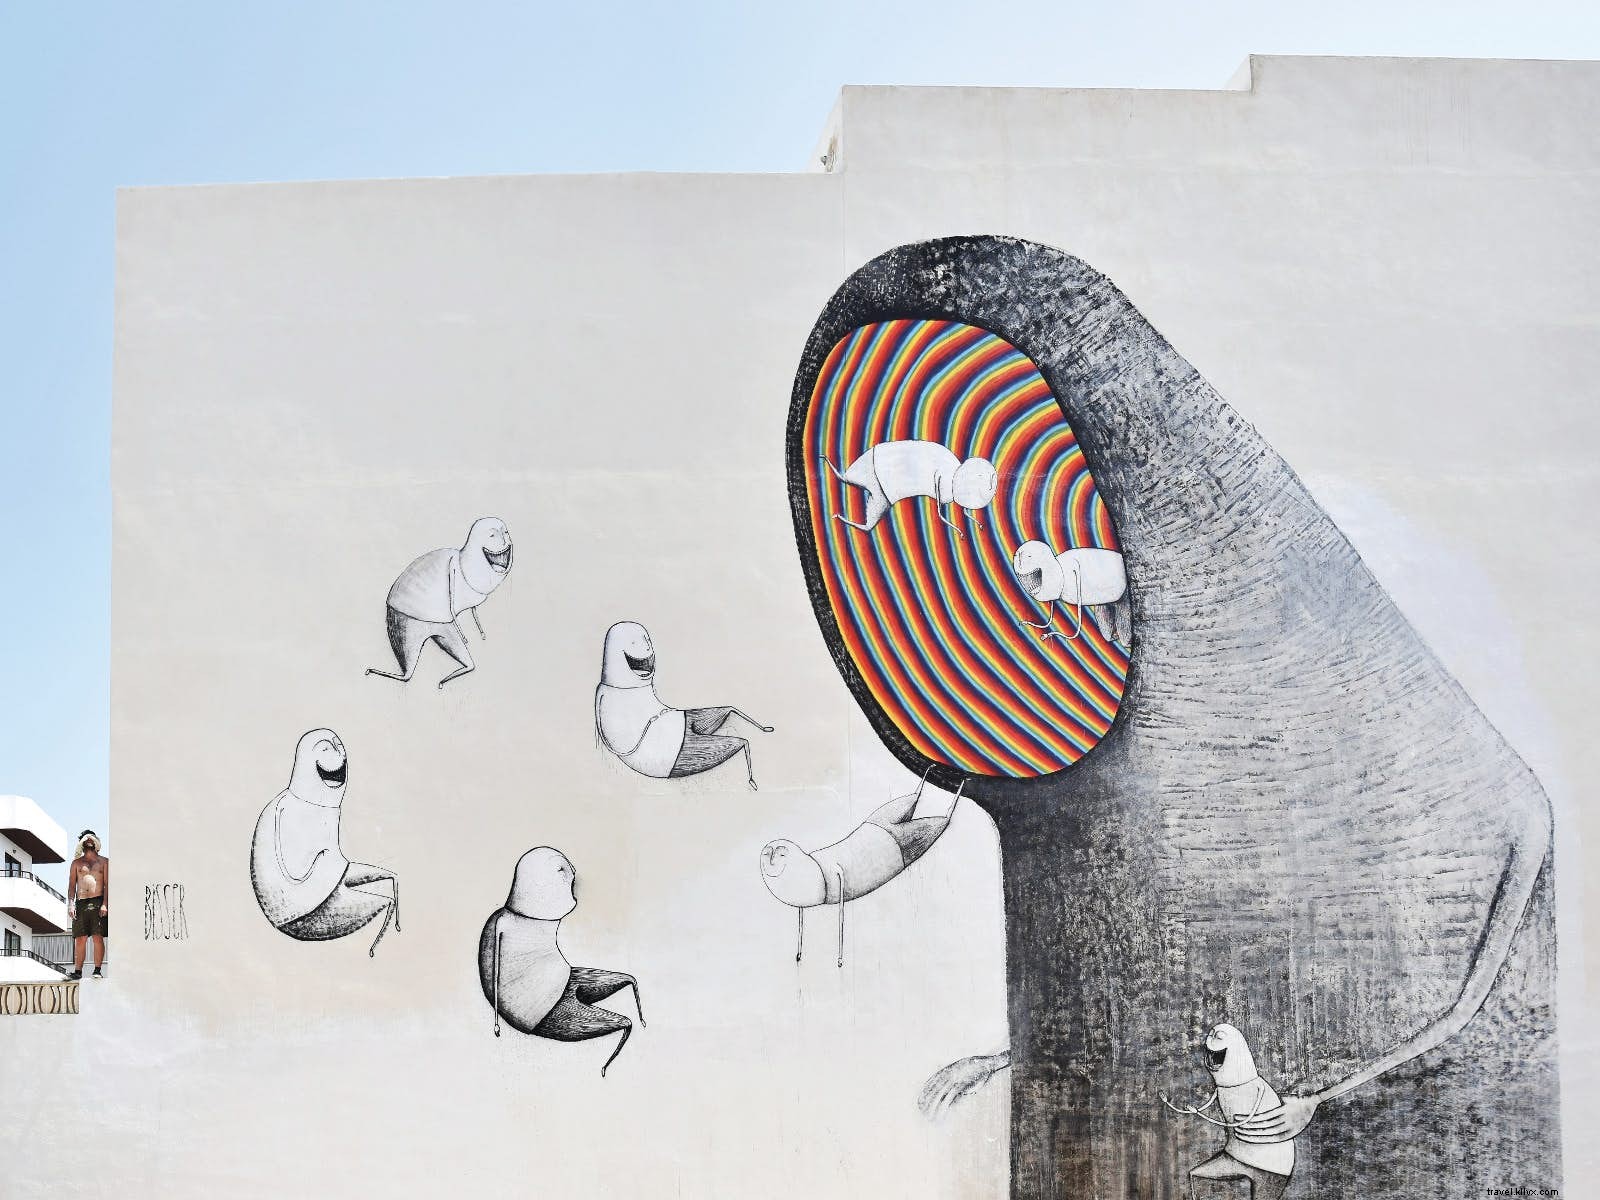 Celebrazione della street art:otto festival per la forma dell arte urbana 